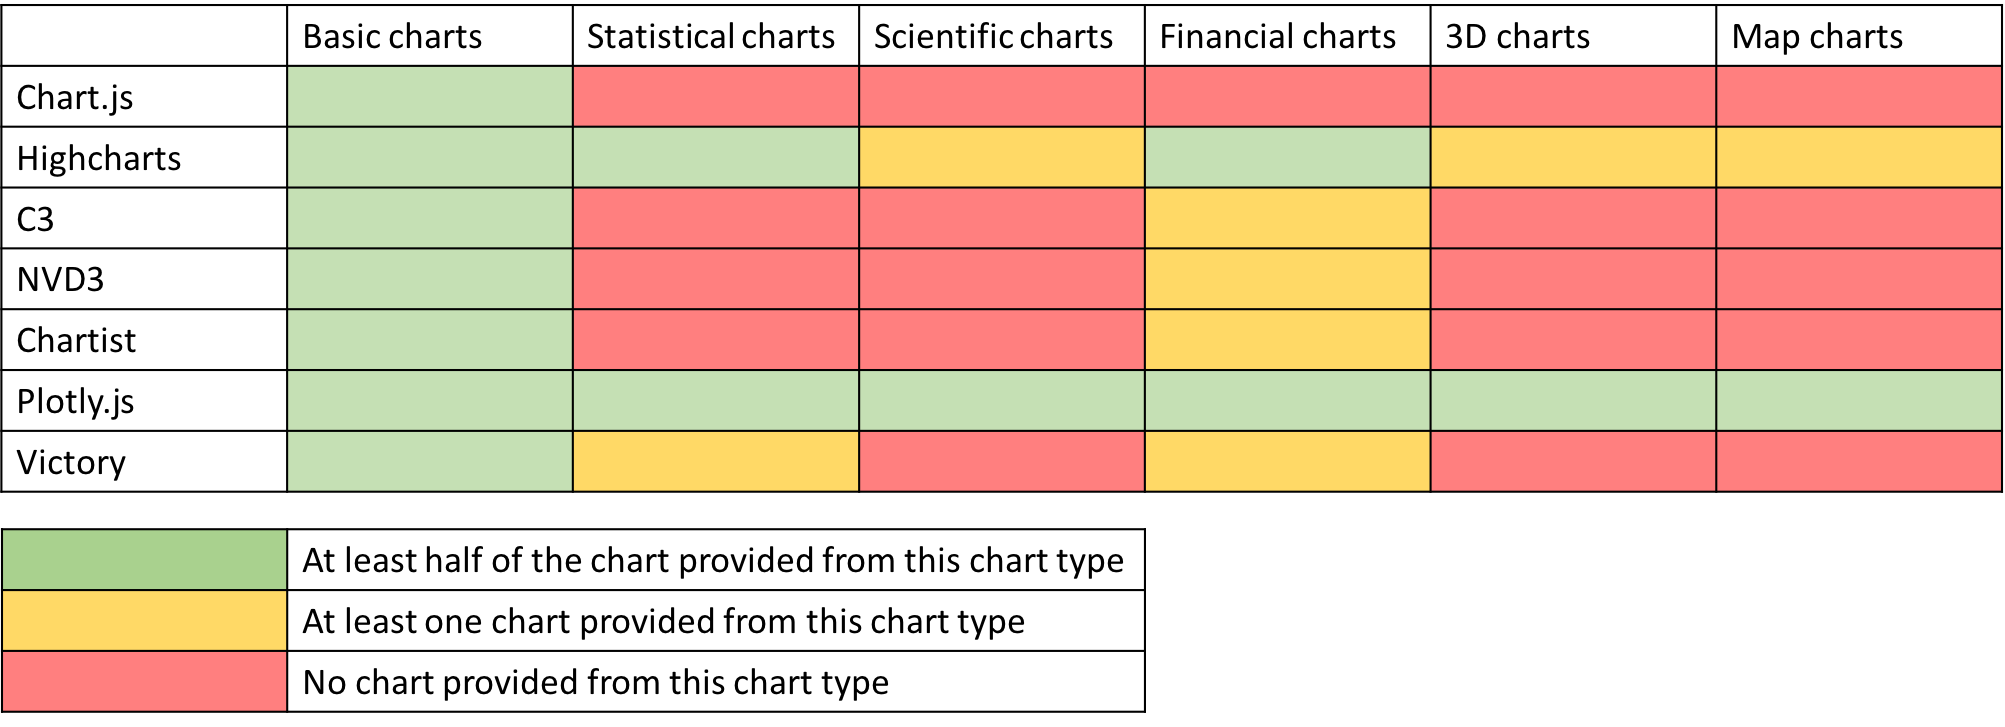 Nvd3 Gauge Chart